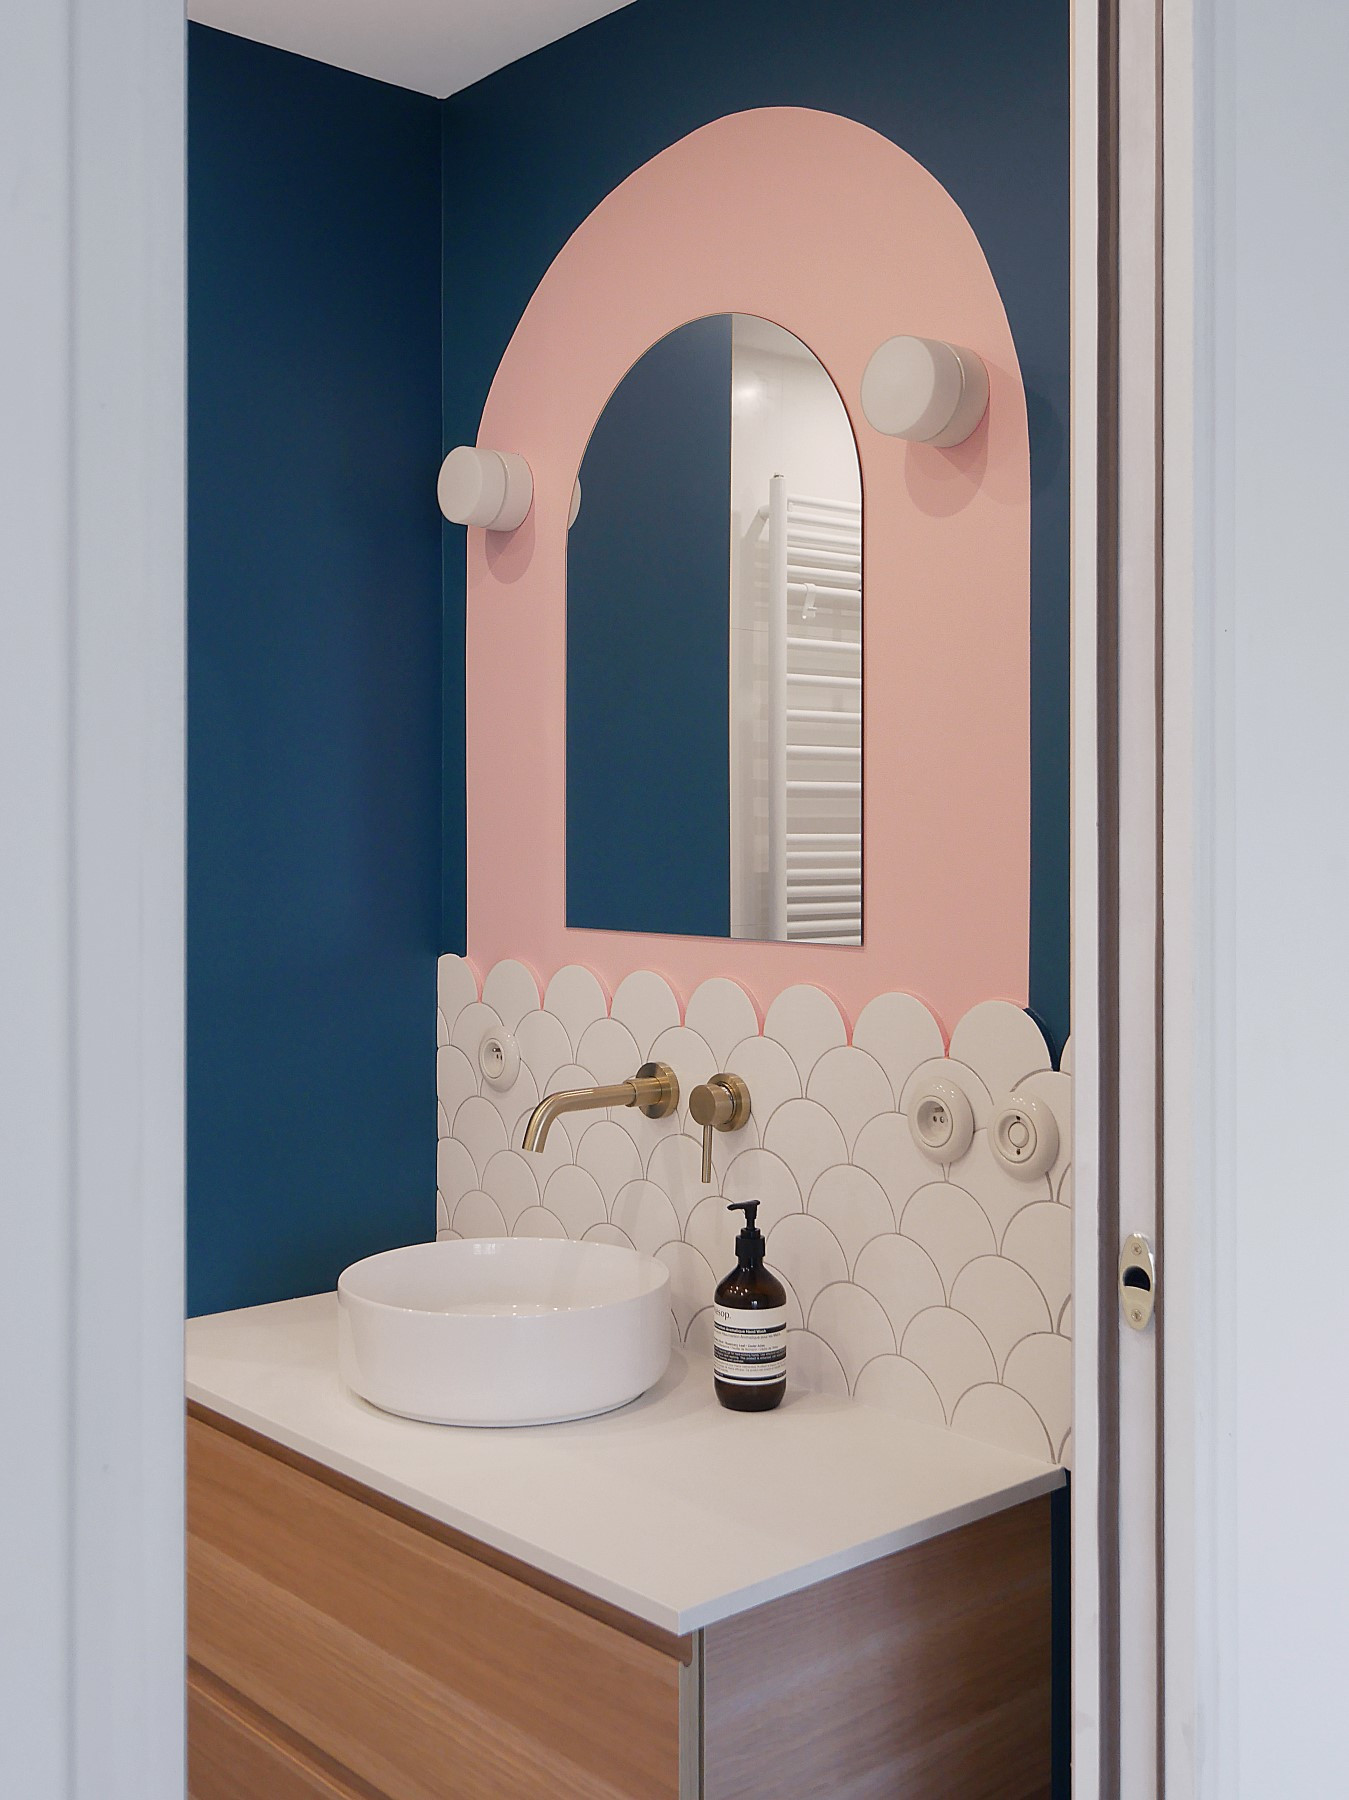 Carrelage uni blanc motif écaille dans une salle de bain aux murs bleu marine et rose, avec vasque blanche et robinetterie dorée